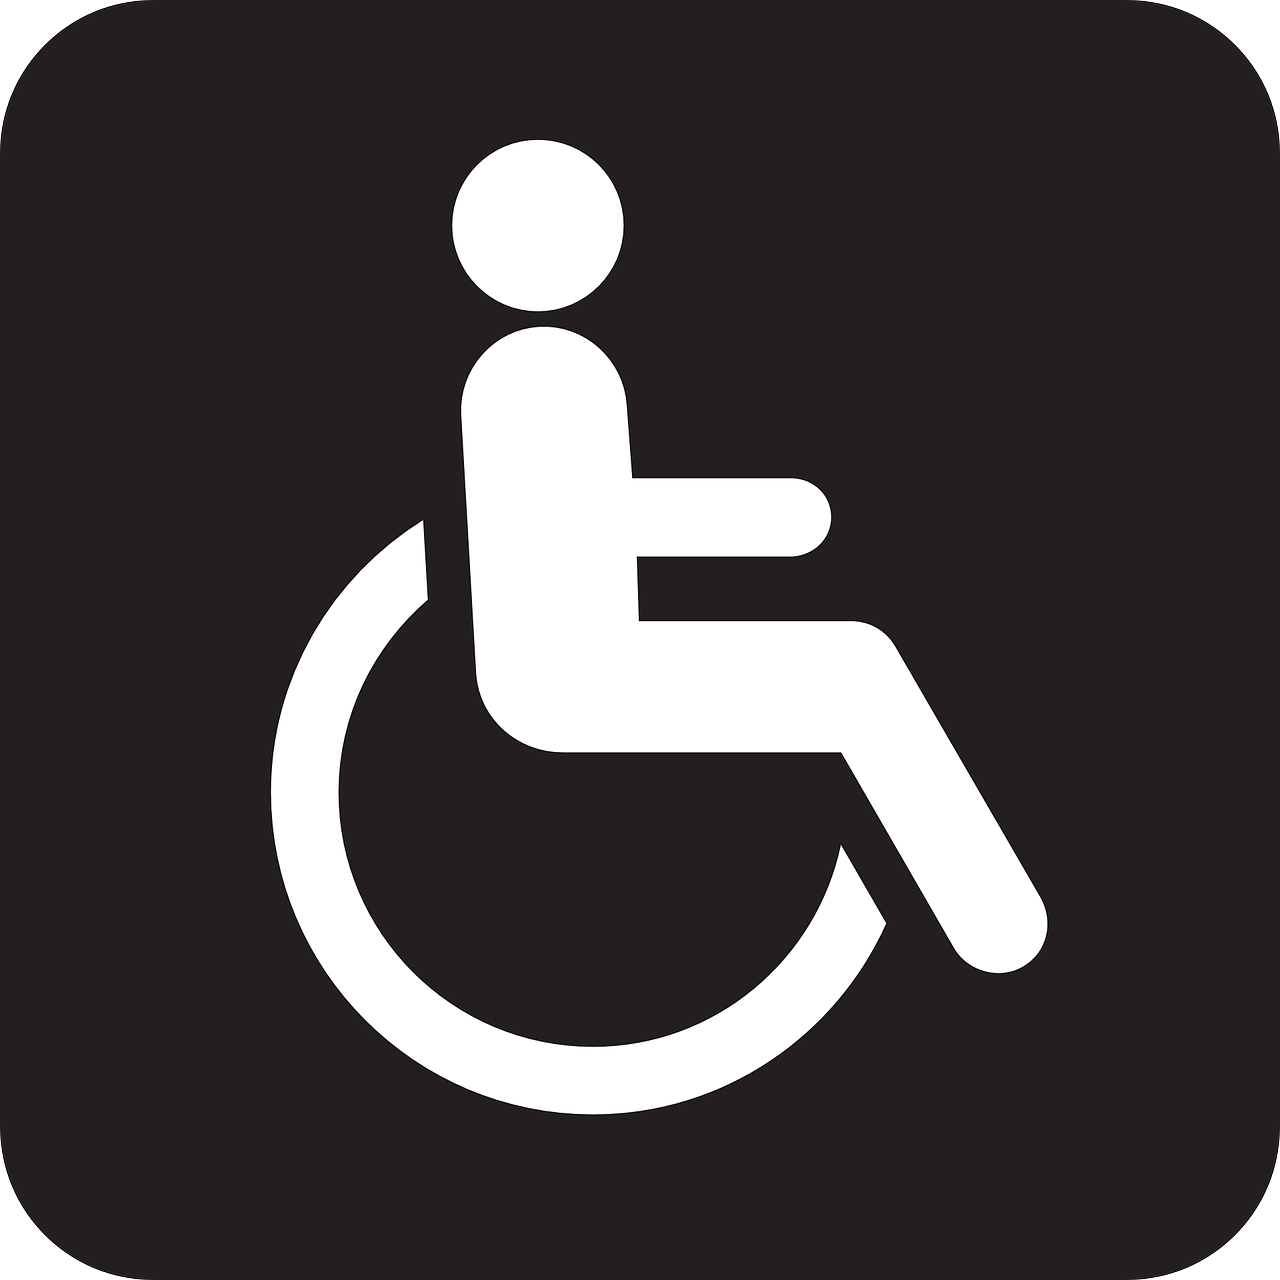 Leoni Mentorschap kosten instellingen gehandicaptenzorg verstandelijk gehandicapten